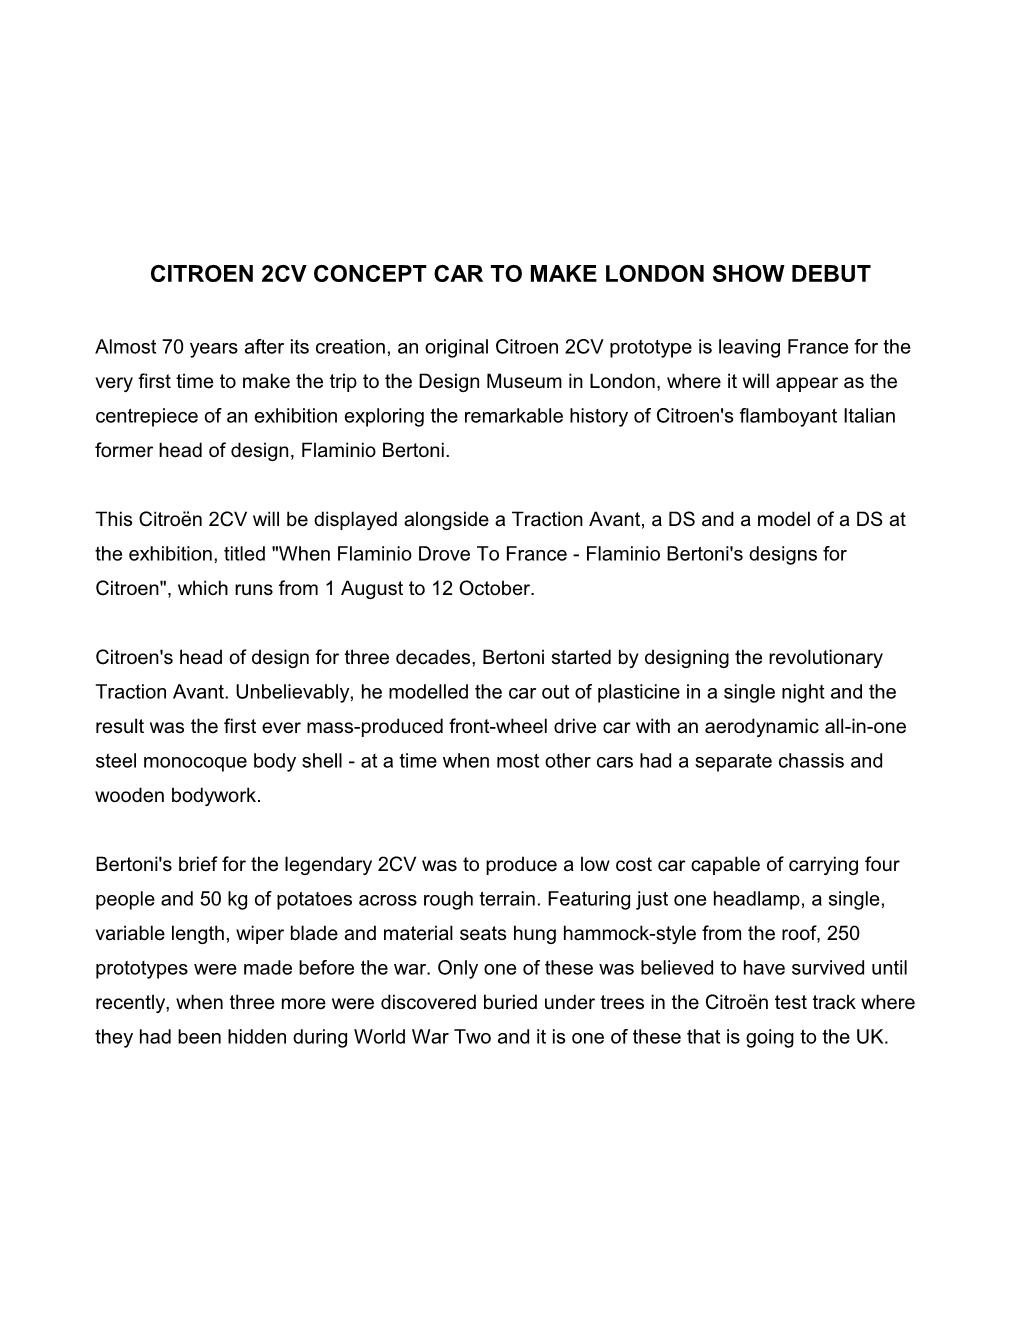 Citroen 2Cv Concept Car to Make London Show Debut